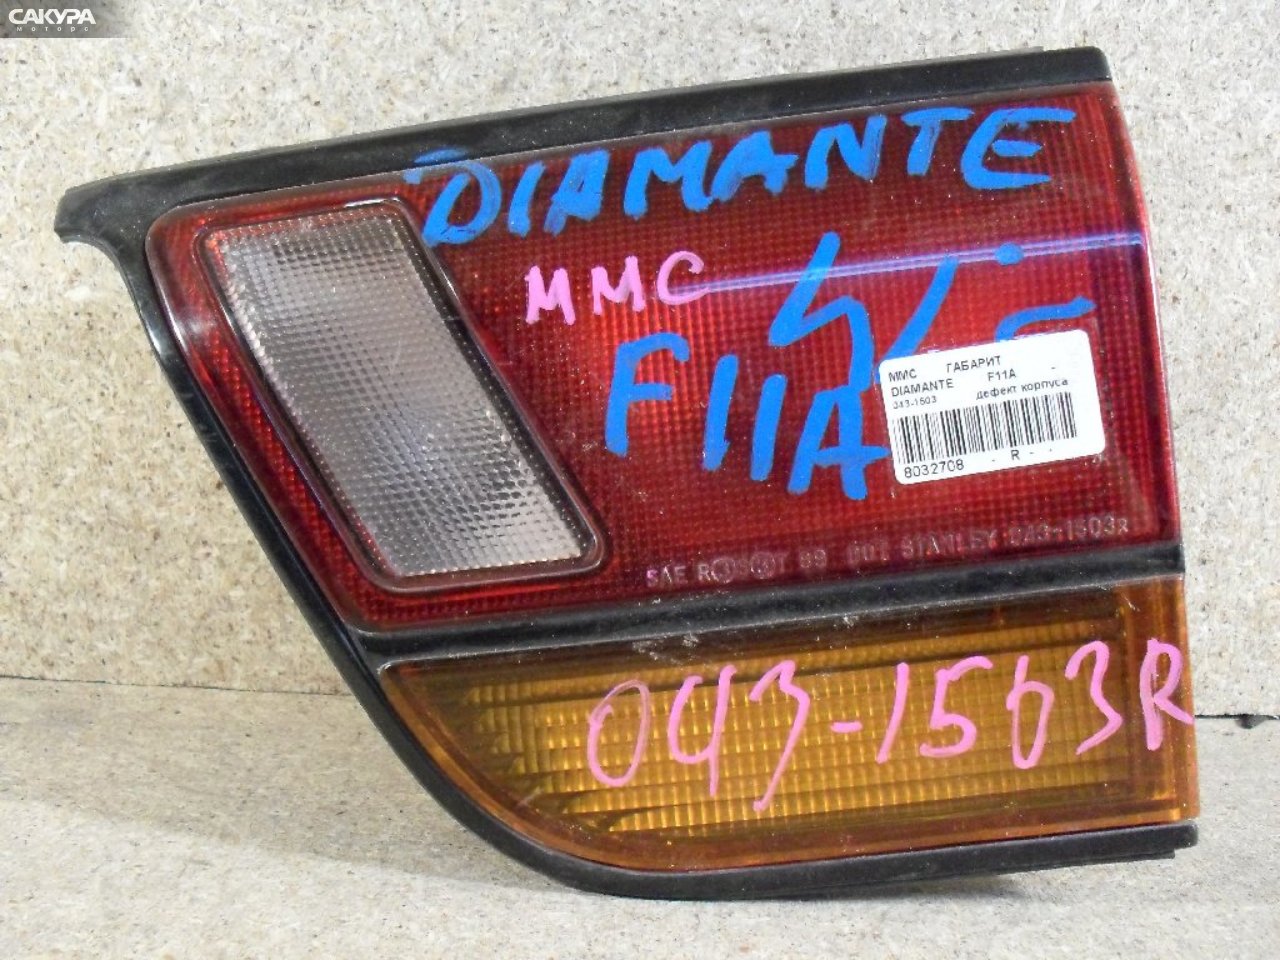 Фонарь вставка багажника правый Mitsubishi Diamante F11A 043-1503: купить в Сакура Абакан.